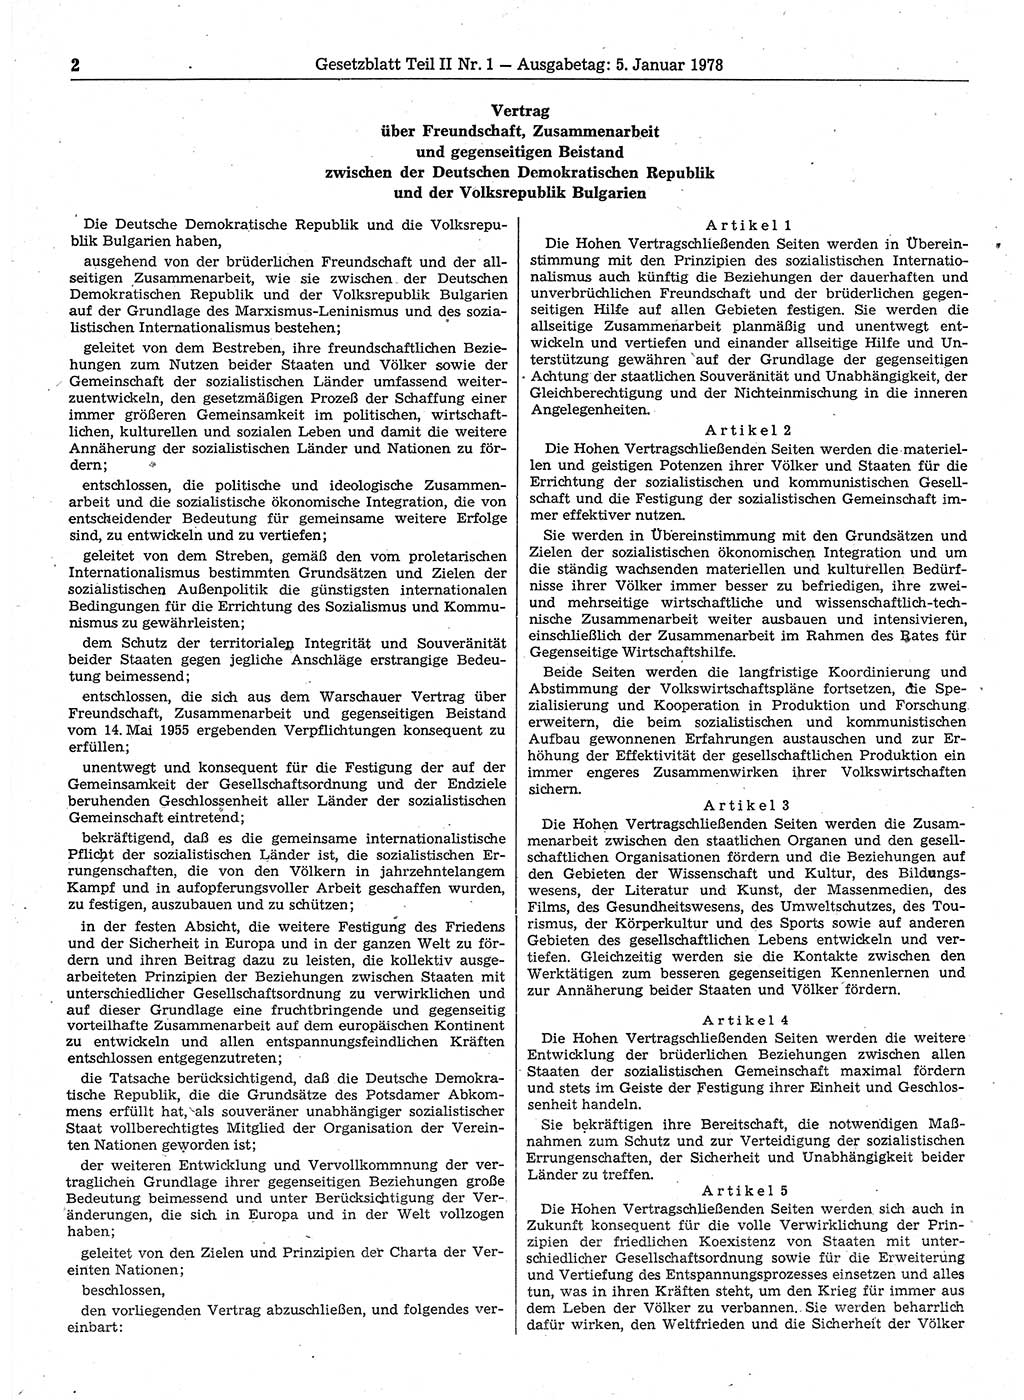 Gesetzblatt (GBl.) der Deutschen Demokratischen Republik (DDR) Teil ⅠⅠ 1978, Seite 2 (GBl. DDR ⅠⅠ 1978, S. 2)